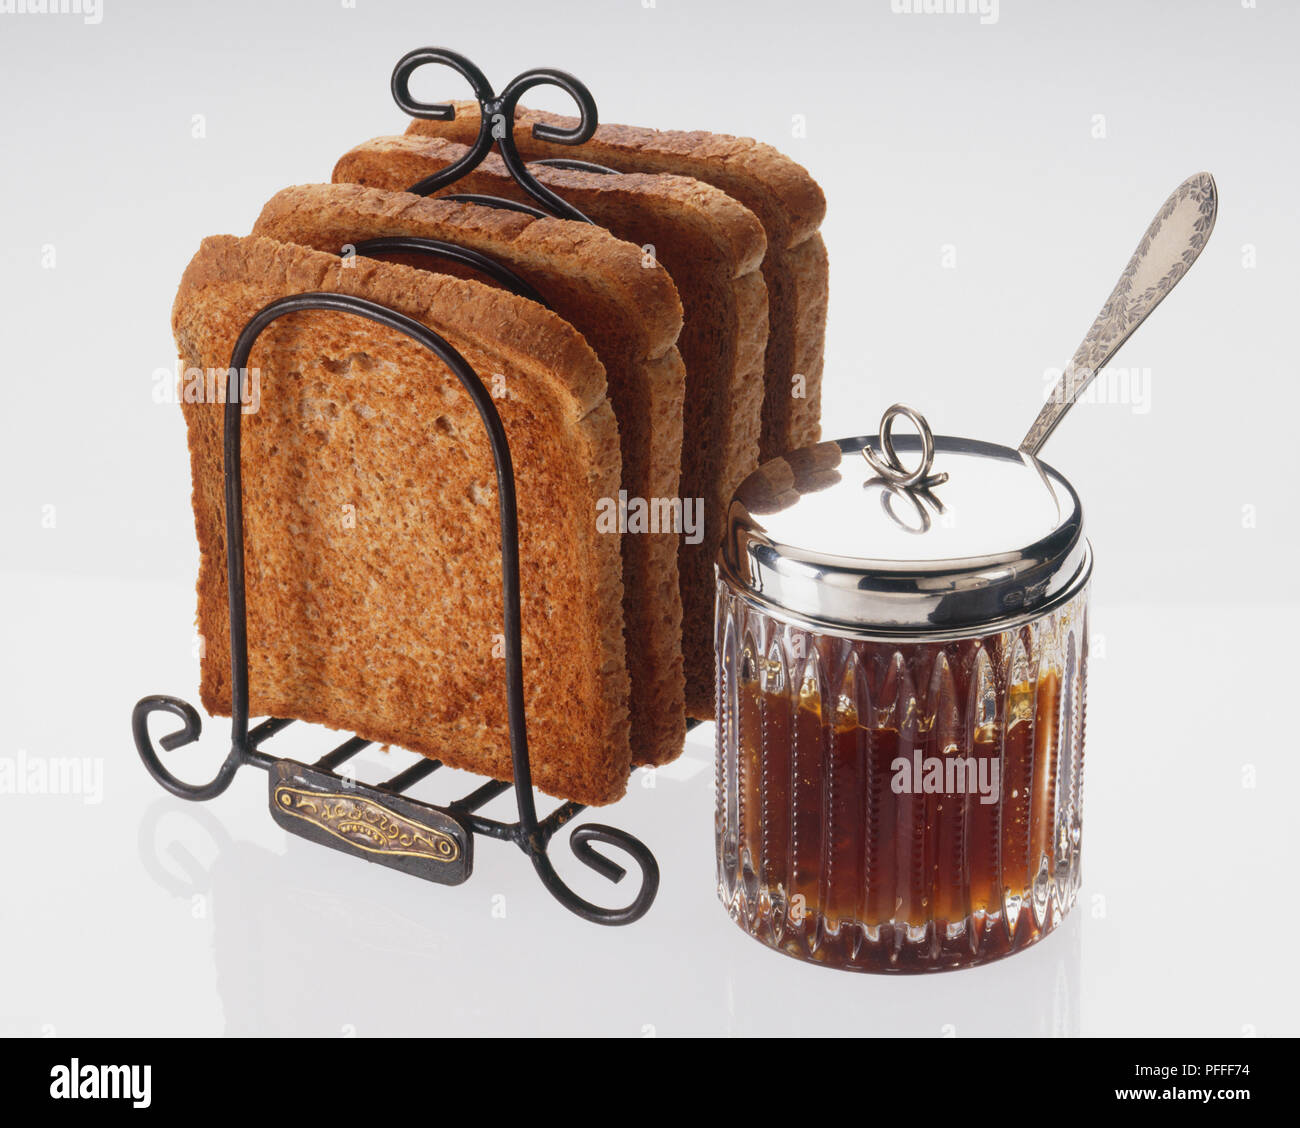 Jam servi dans un bocal en verre avec un couvercle d'argent et une cuillère, et un toast rack contenant quatre tranches de pain grillé Banque D'Images